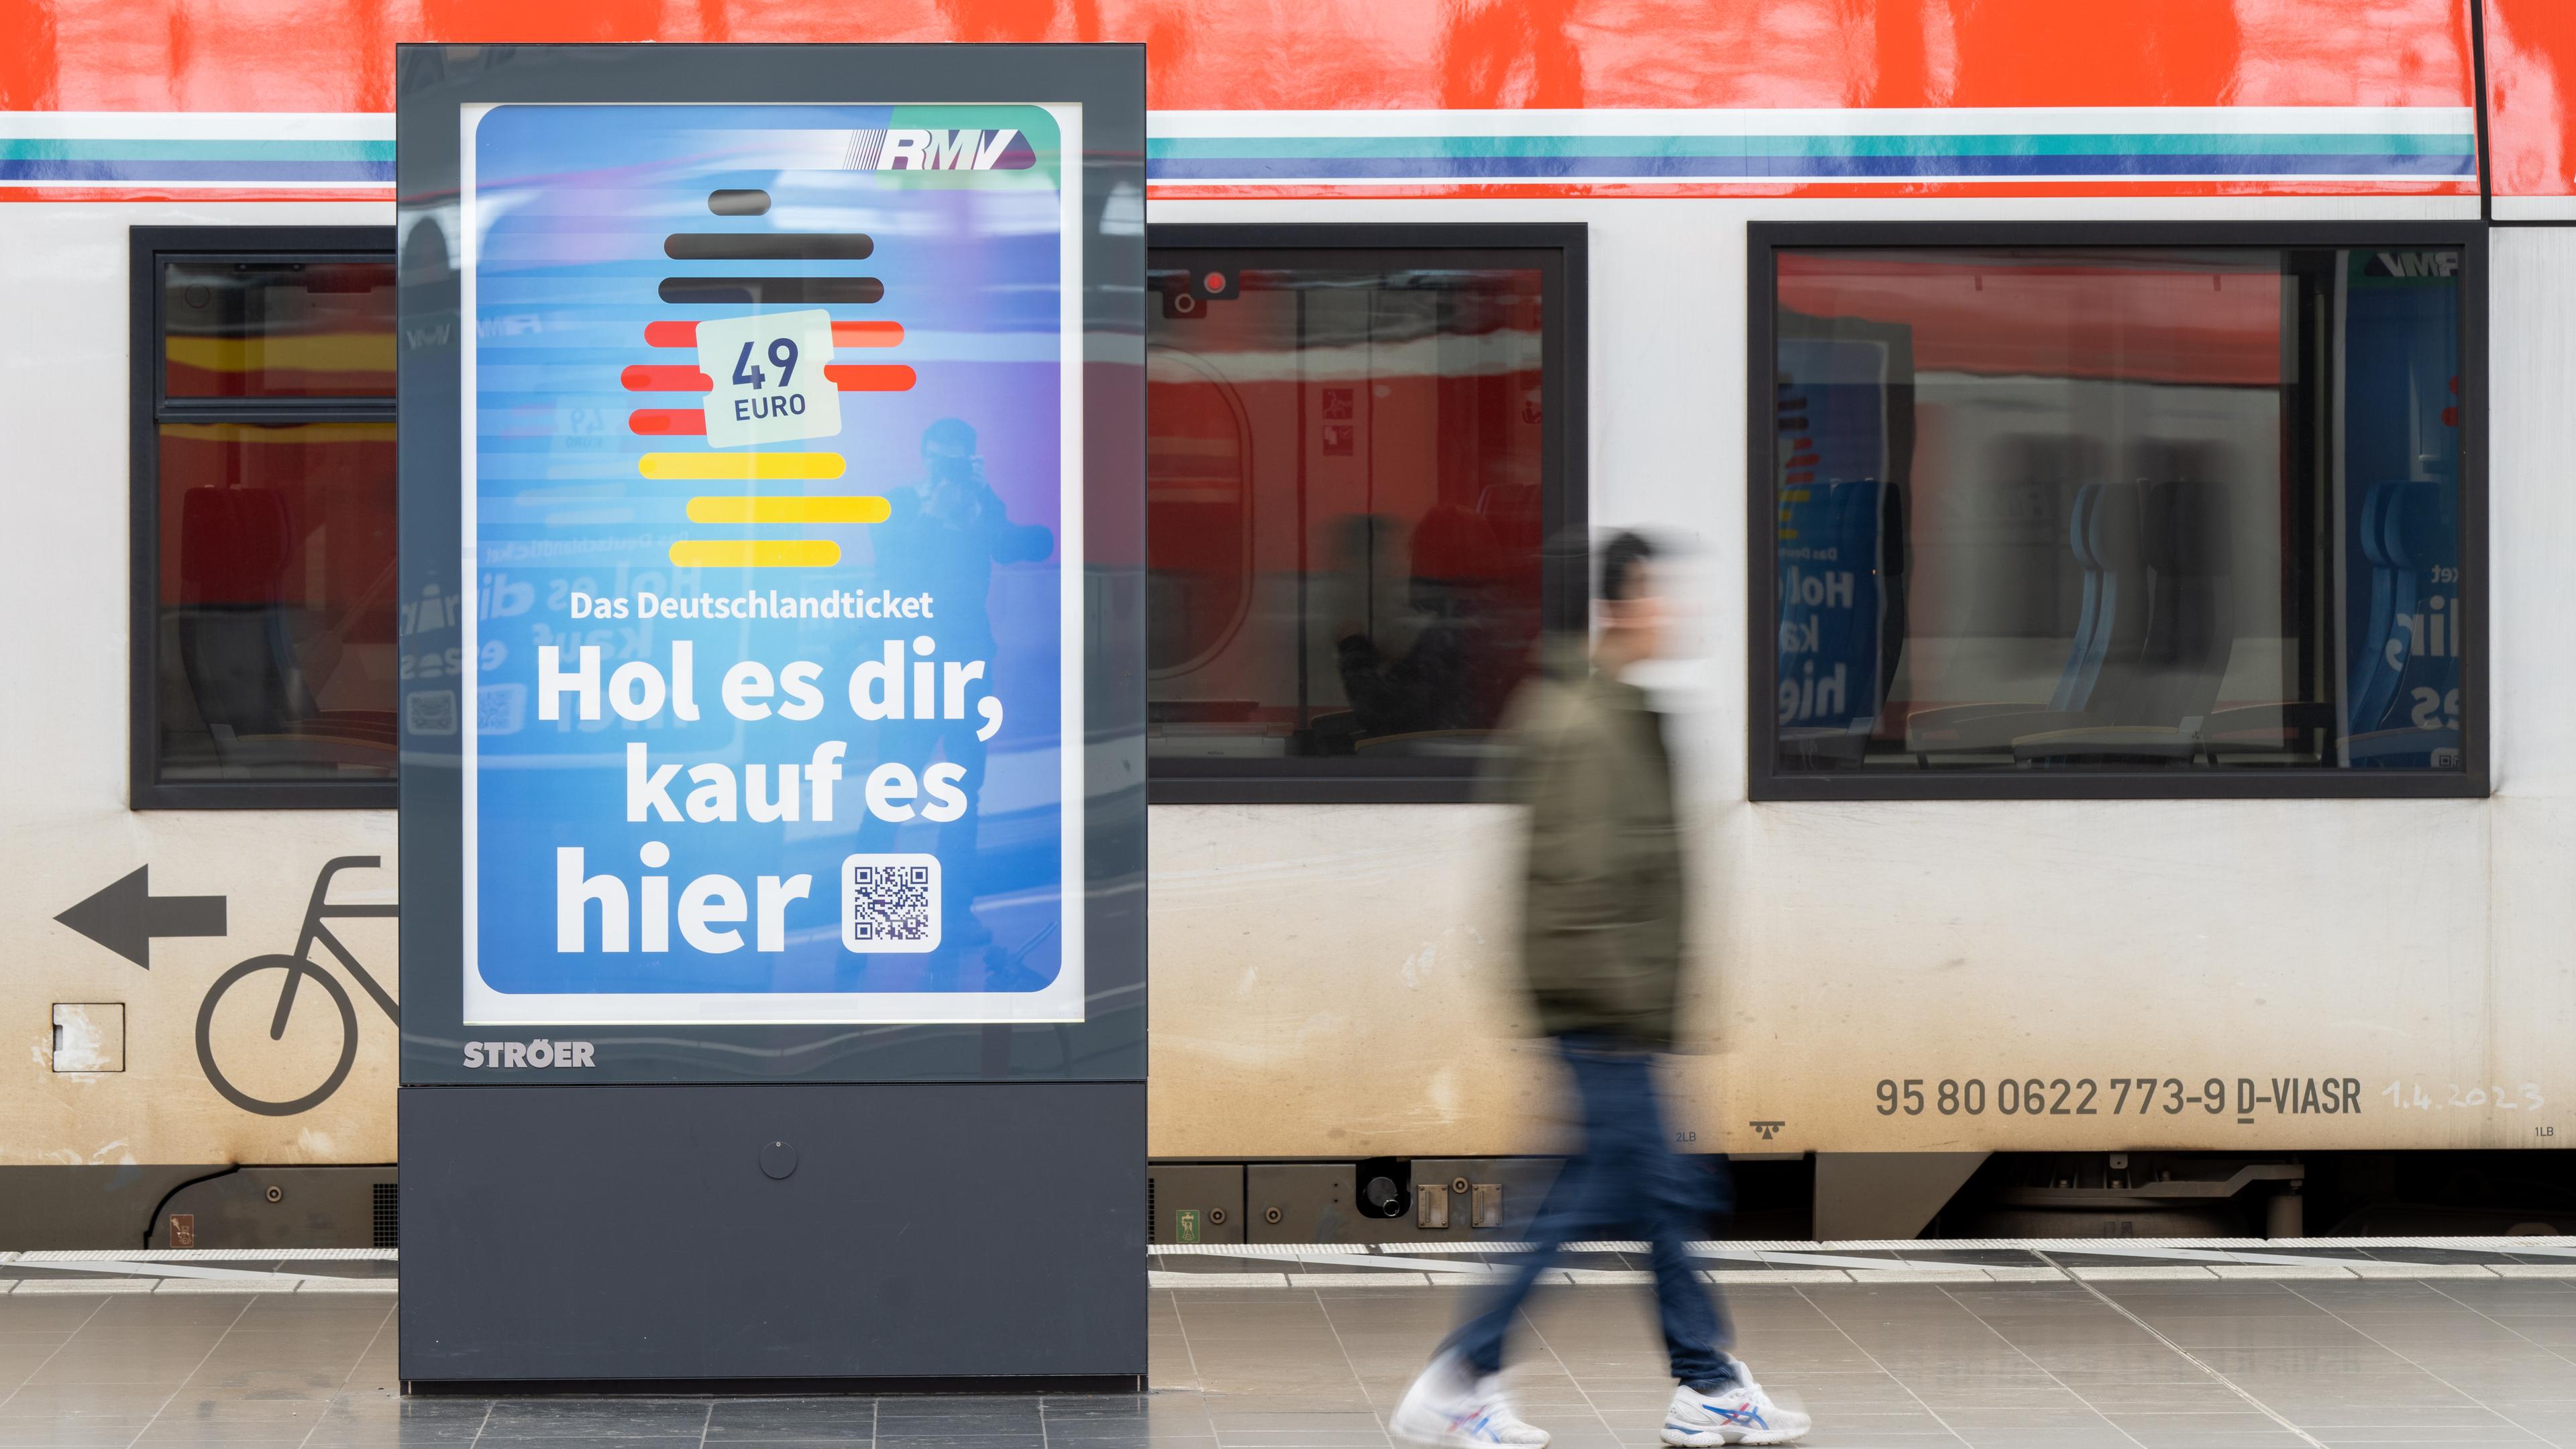 Ein Schild an einem Bahnhof, das Werbung fürs Deutschland-Ticket macht: "Hol es dir, kauf es hier", dahinter ein Zug